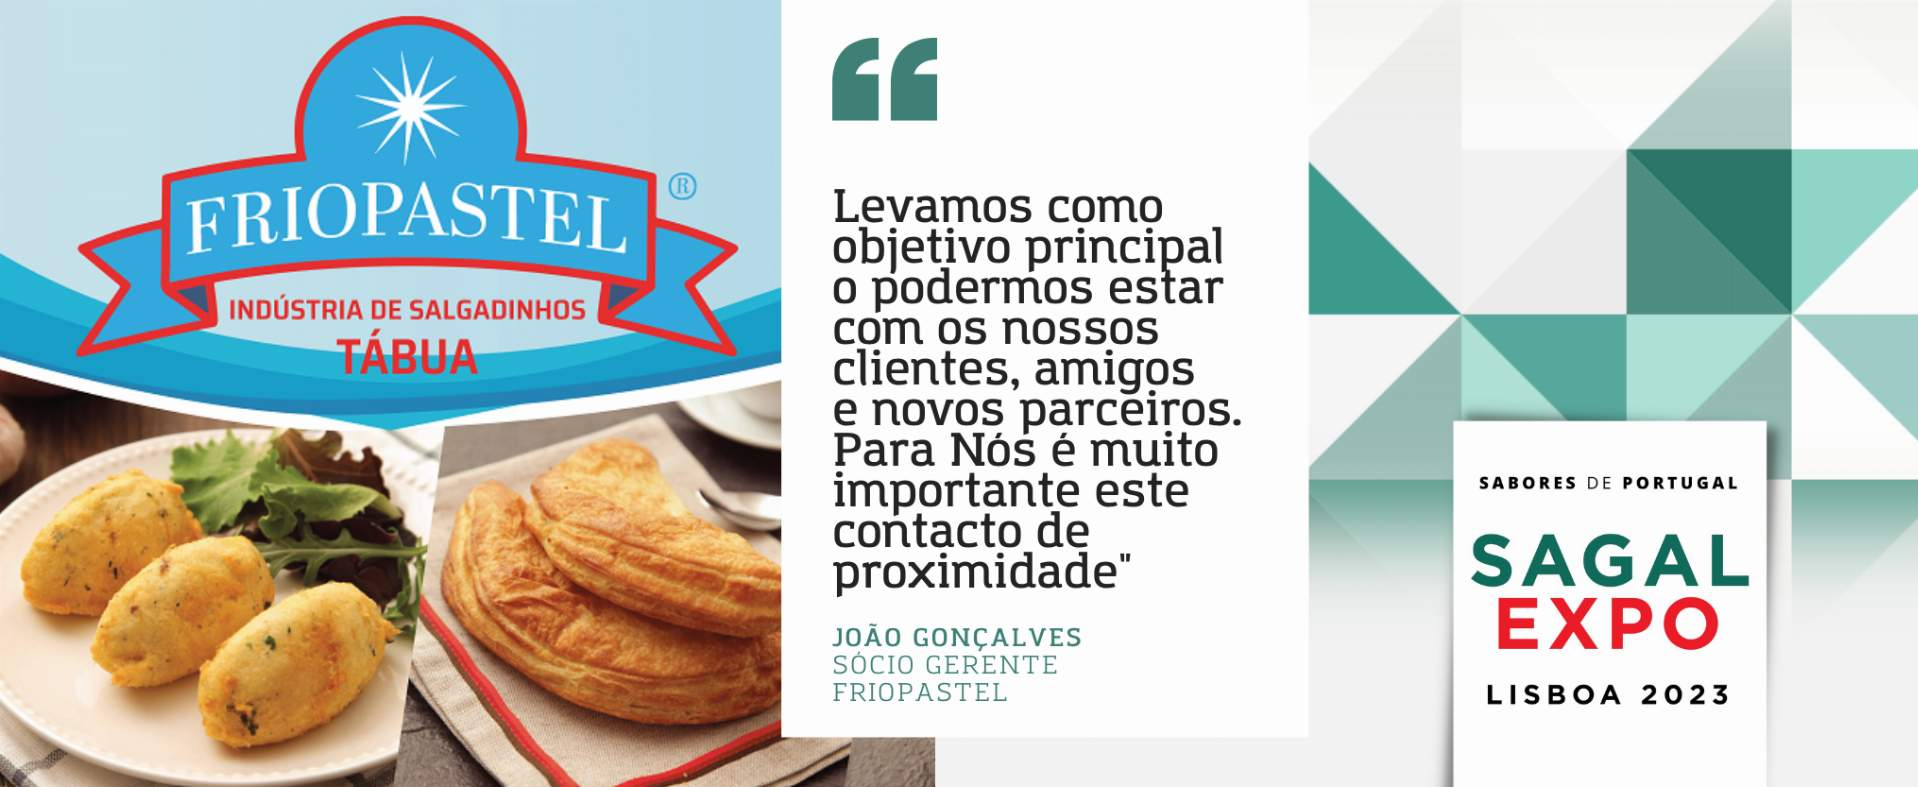 Friopastel: “Levamos como objectivo principal o podermos estar com os nossos clientes, amigos e novos parceiros. Para Nós é muito importante este contacto de proximidade”